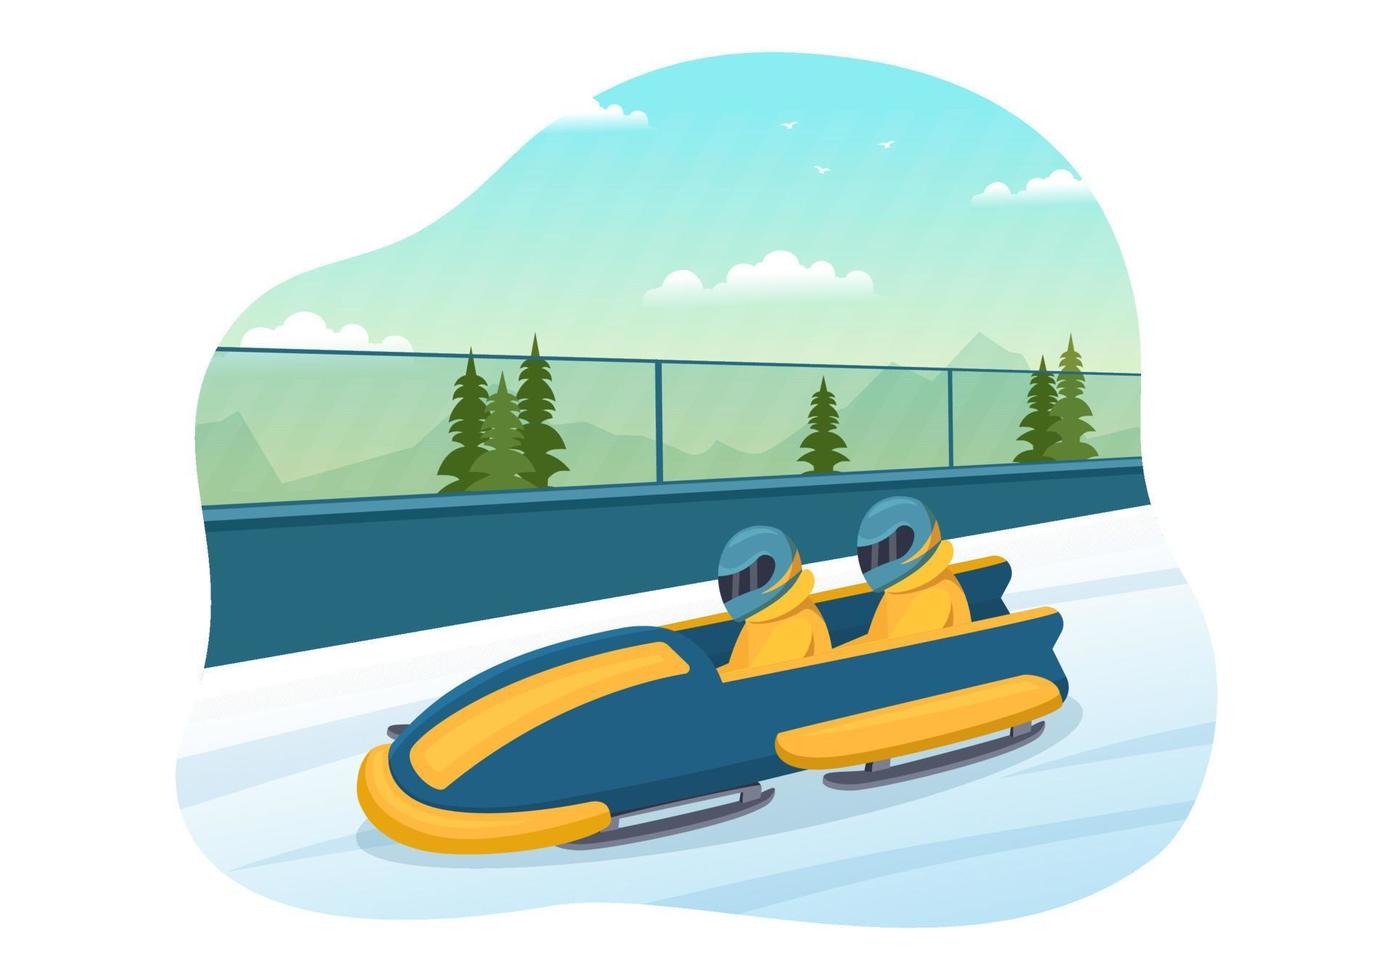 atleta montando trineo bobsleigh ilustración con nieve, hielo y pista de trineo para la competencia en actividades deportivas de invierno dibujos animados planos plantillas dibujadas a mano vector